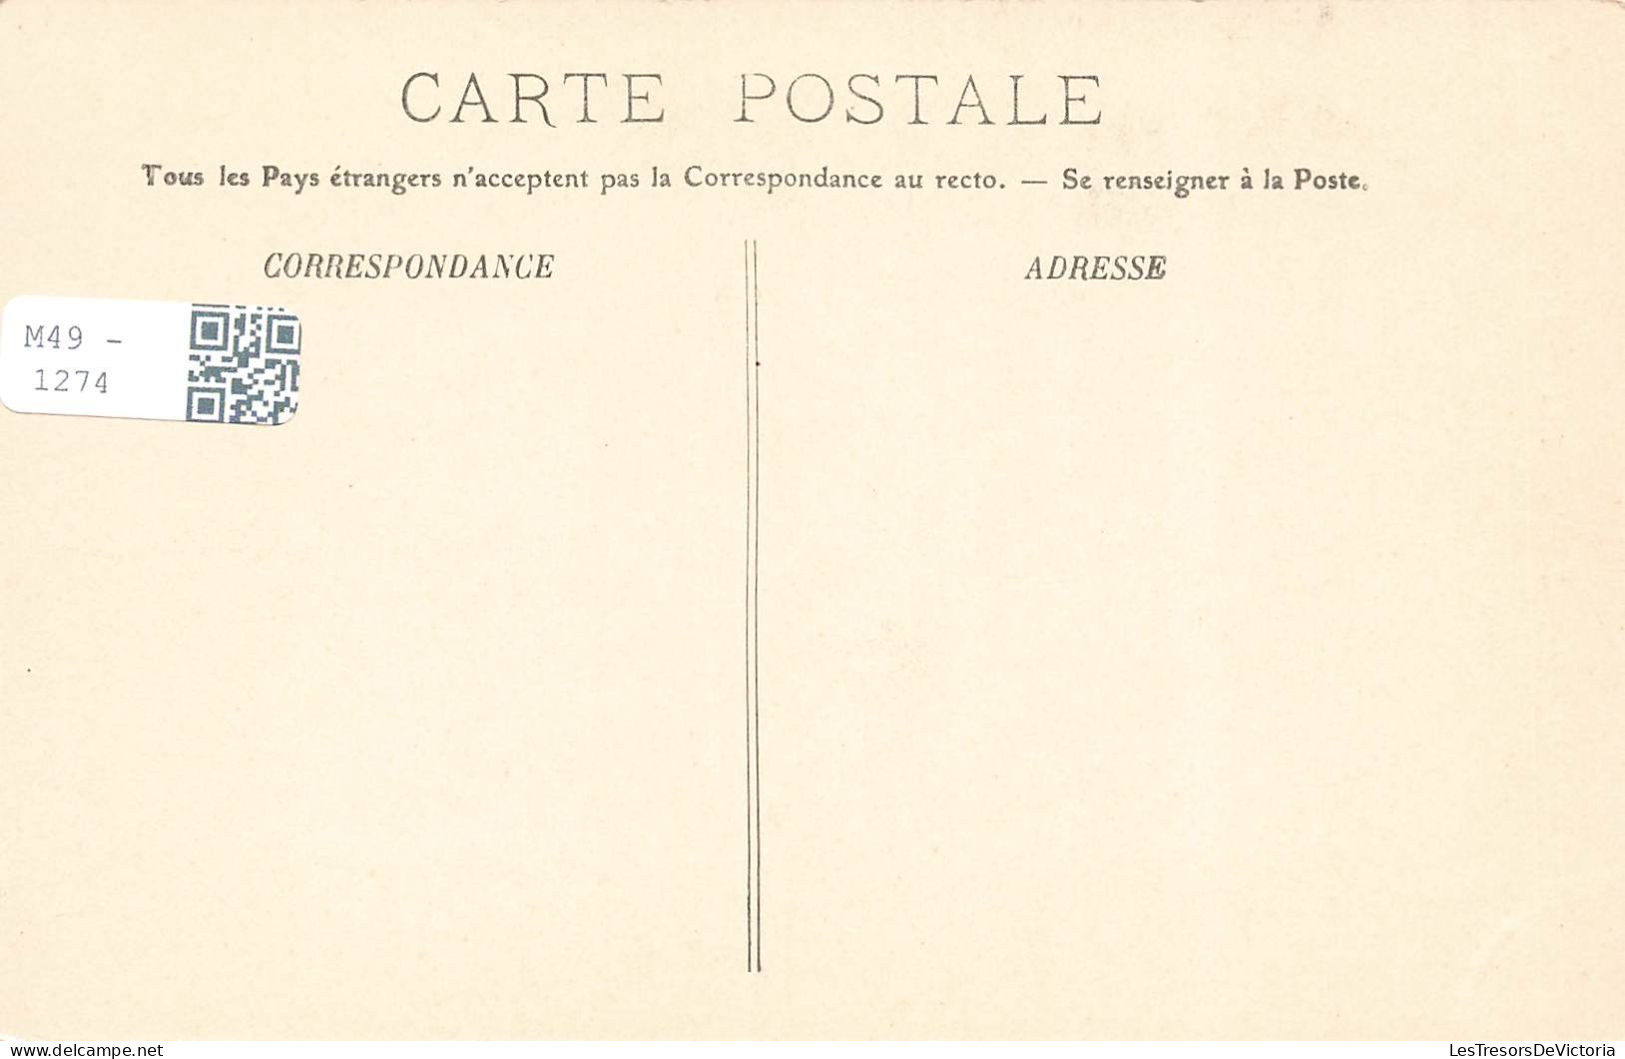 FRANCE - Pierrefonds - La Rue Notre Dame  Et Le Château - LL - Carte Postale Ancienne - Pierrefonds